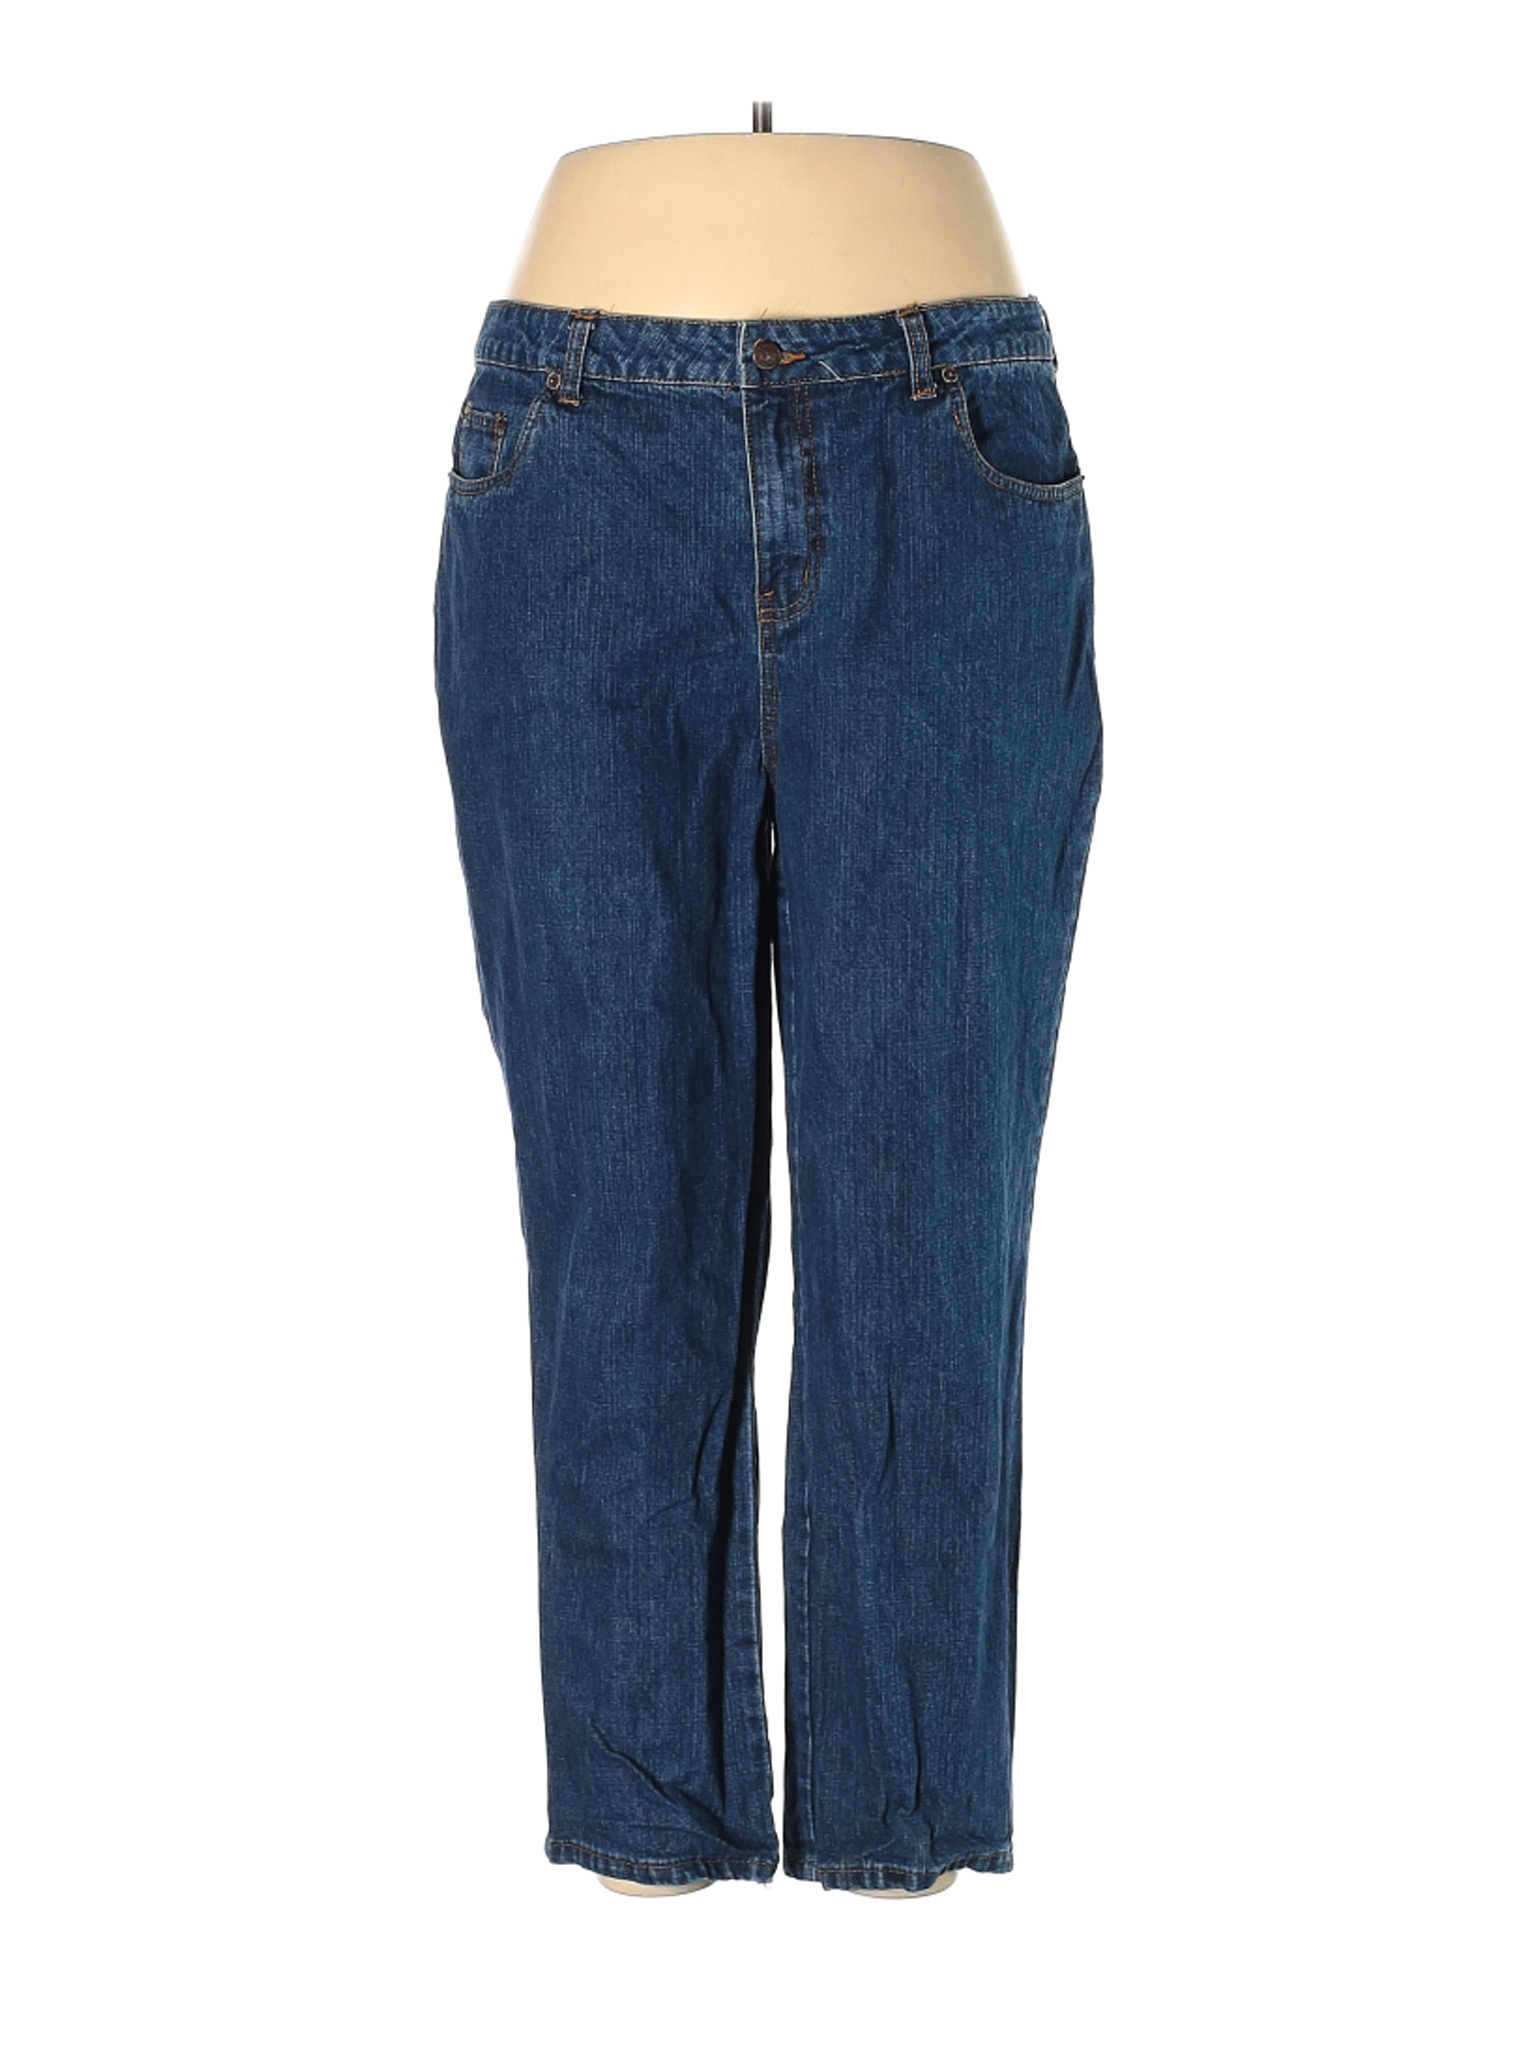 Bill Blass Jeans Women Blue Jeans 18 Plus | eBay